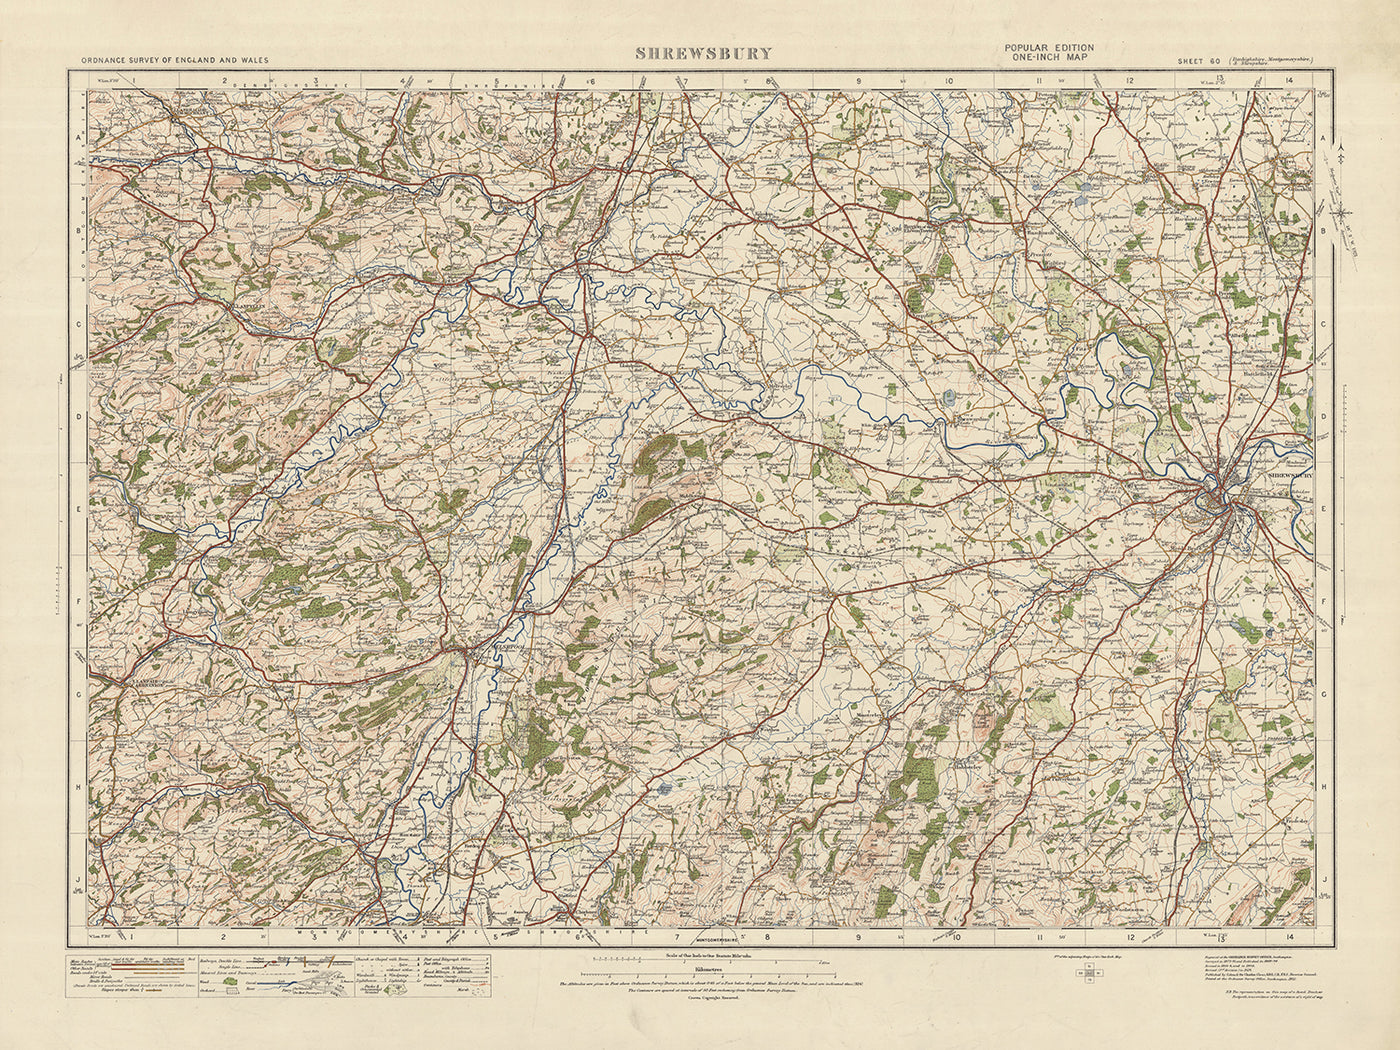 Carte Old Ordnance Survey, feuille 60 - Shrewsbury, 1925 : Welshpool, Llanfyllin, Llanrhaeadr-ym-Mochnant, Llanfair Caereinion, Shropshire Hills AONB